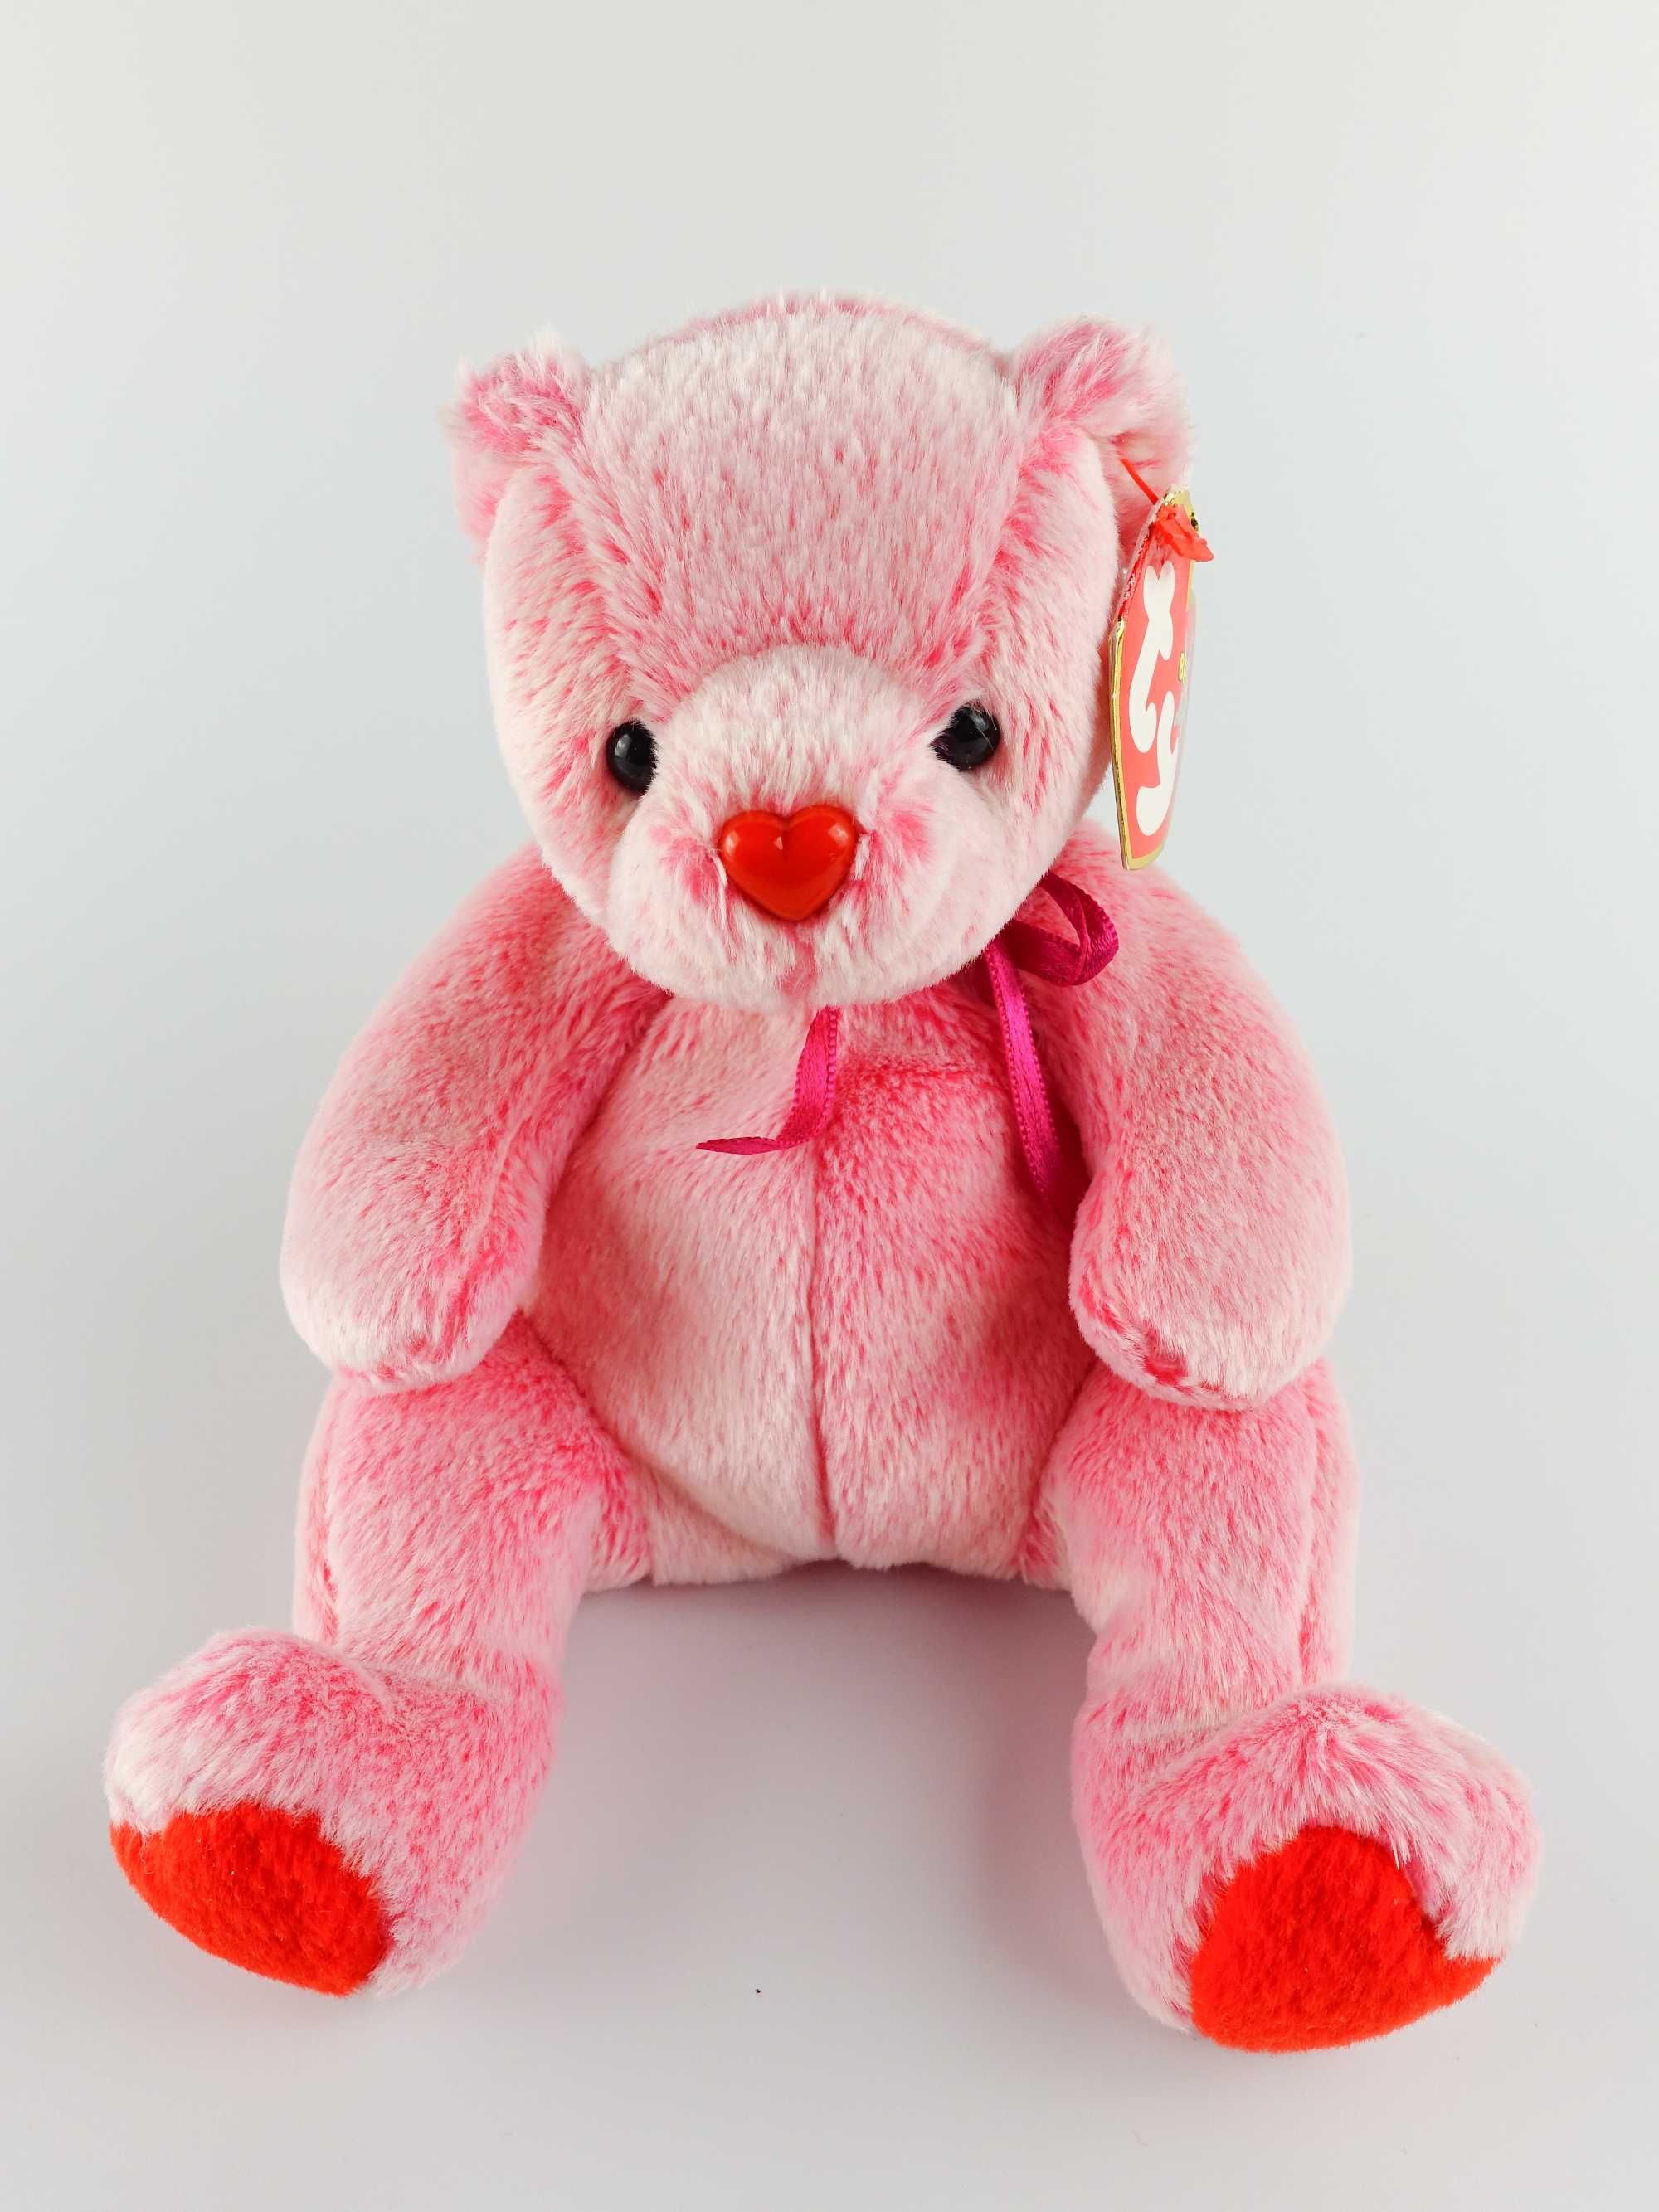 Рожевий ведмедик Romance Bear, серія Beanie Baby, від бренду TY, 2001